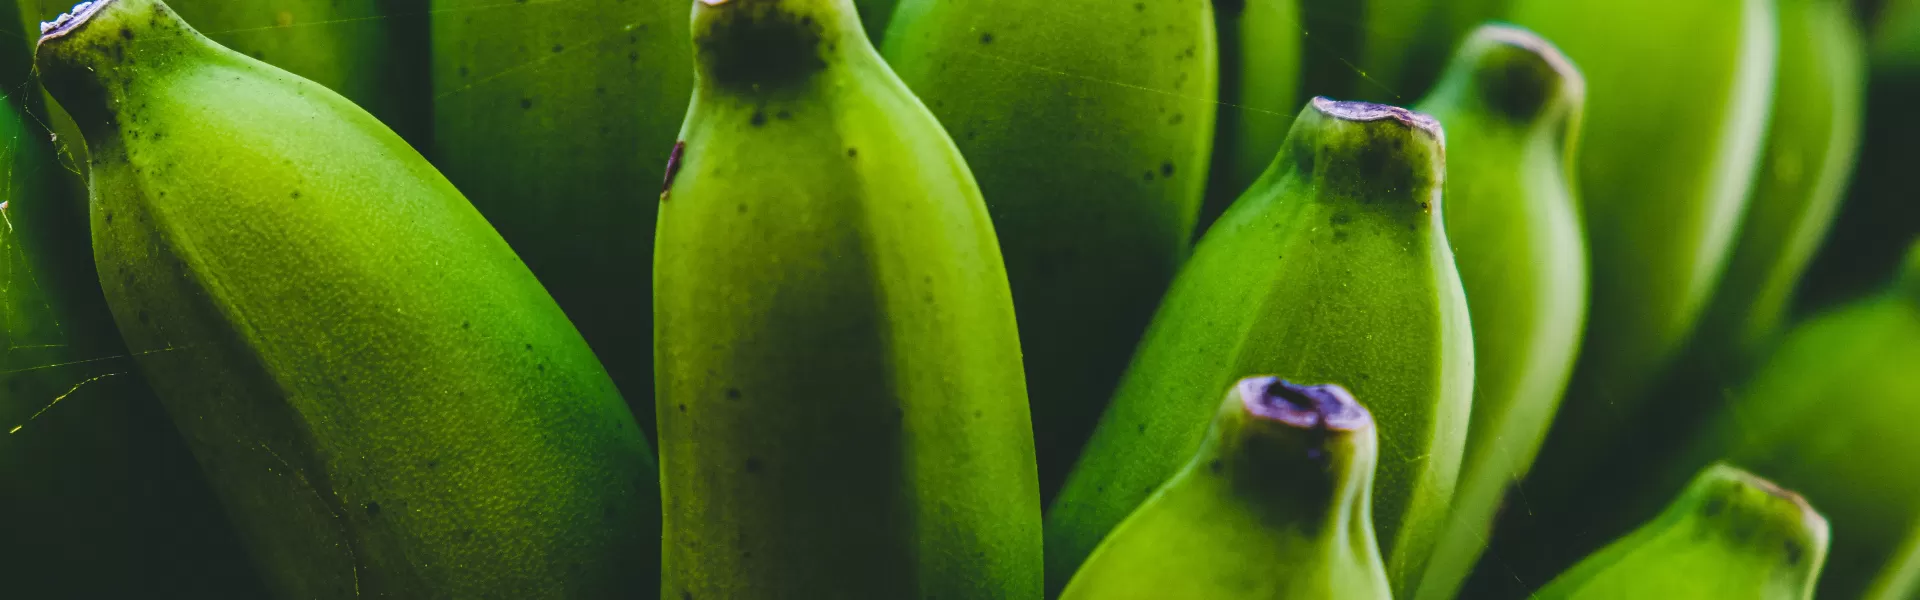 Onrijpe bananen verlagen kans op kanker met 60%